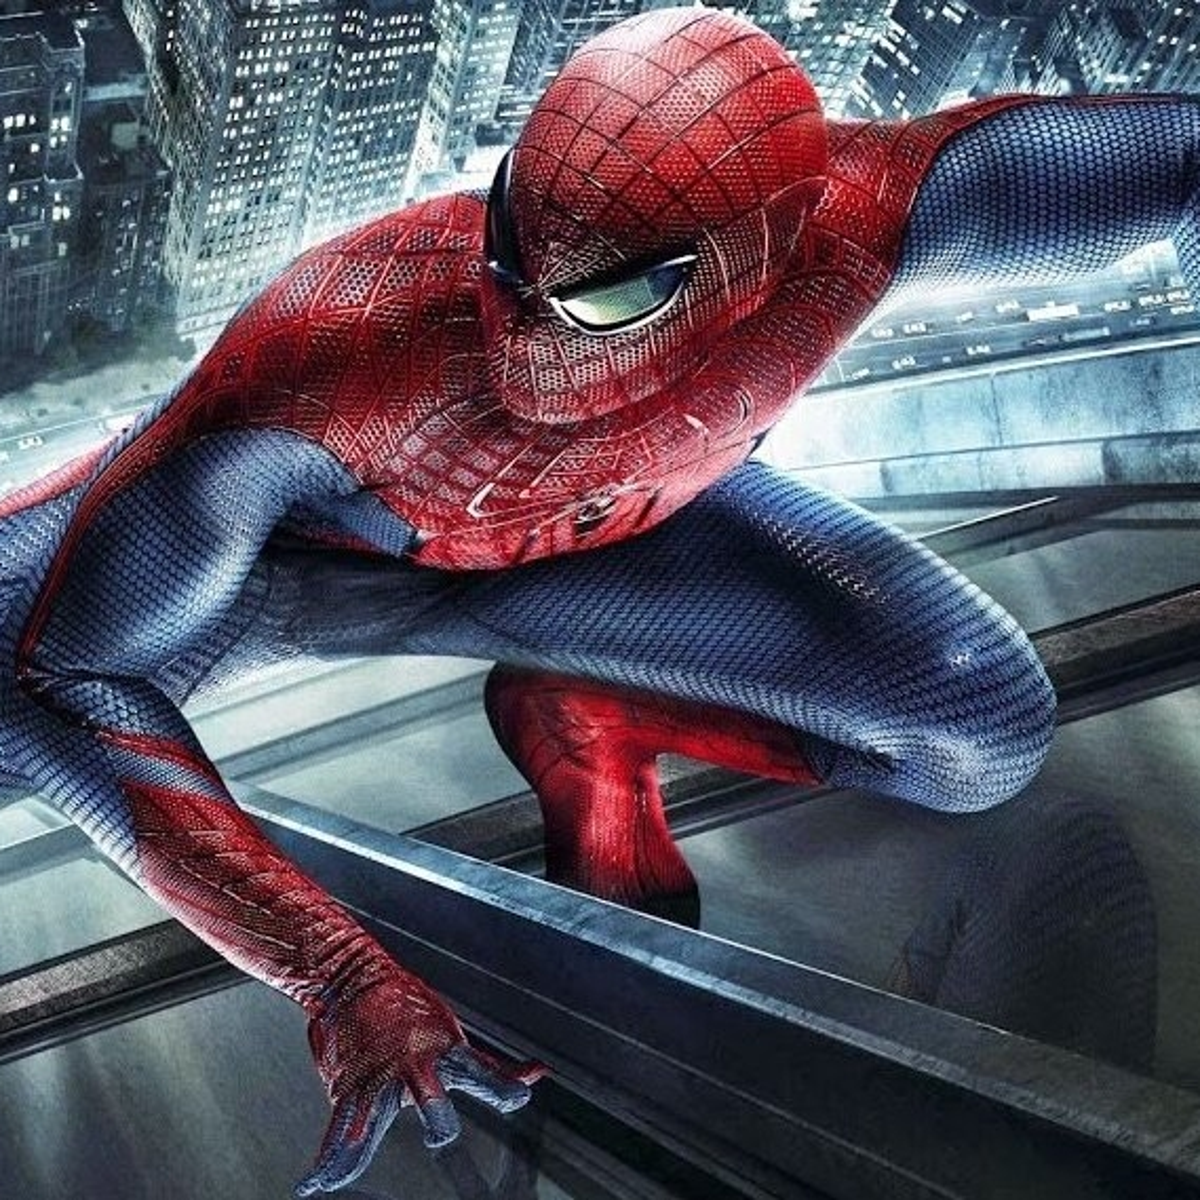 Geslagen vrachtwagen Karakteriseren Indrukwekkend Performance Analysis: The Amazing Spider-Man 2 | Eurogamer.net